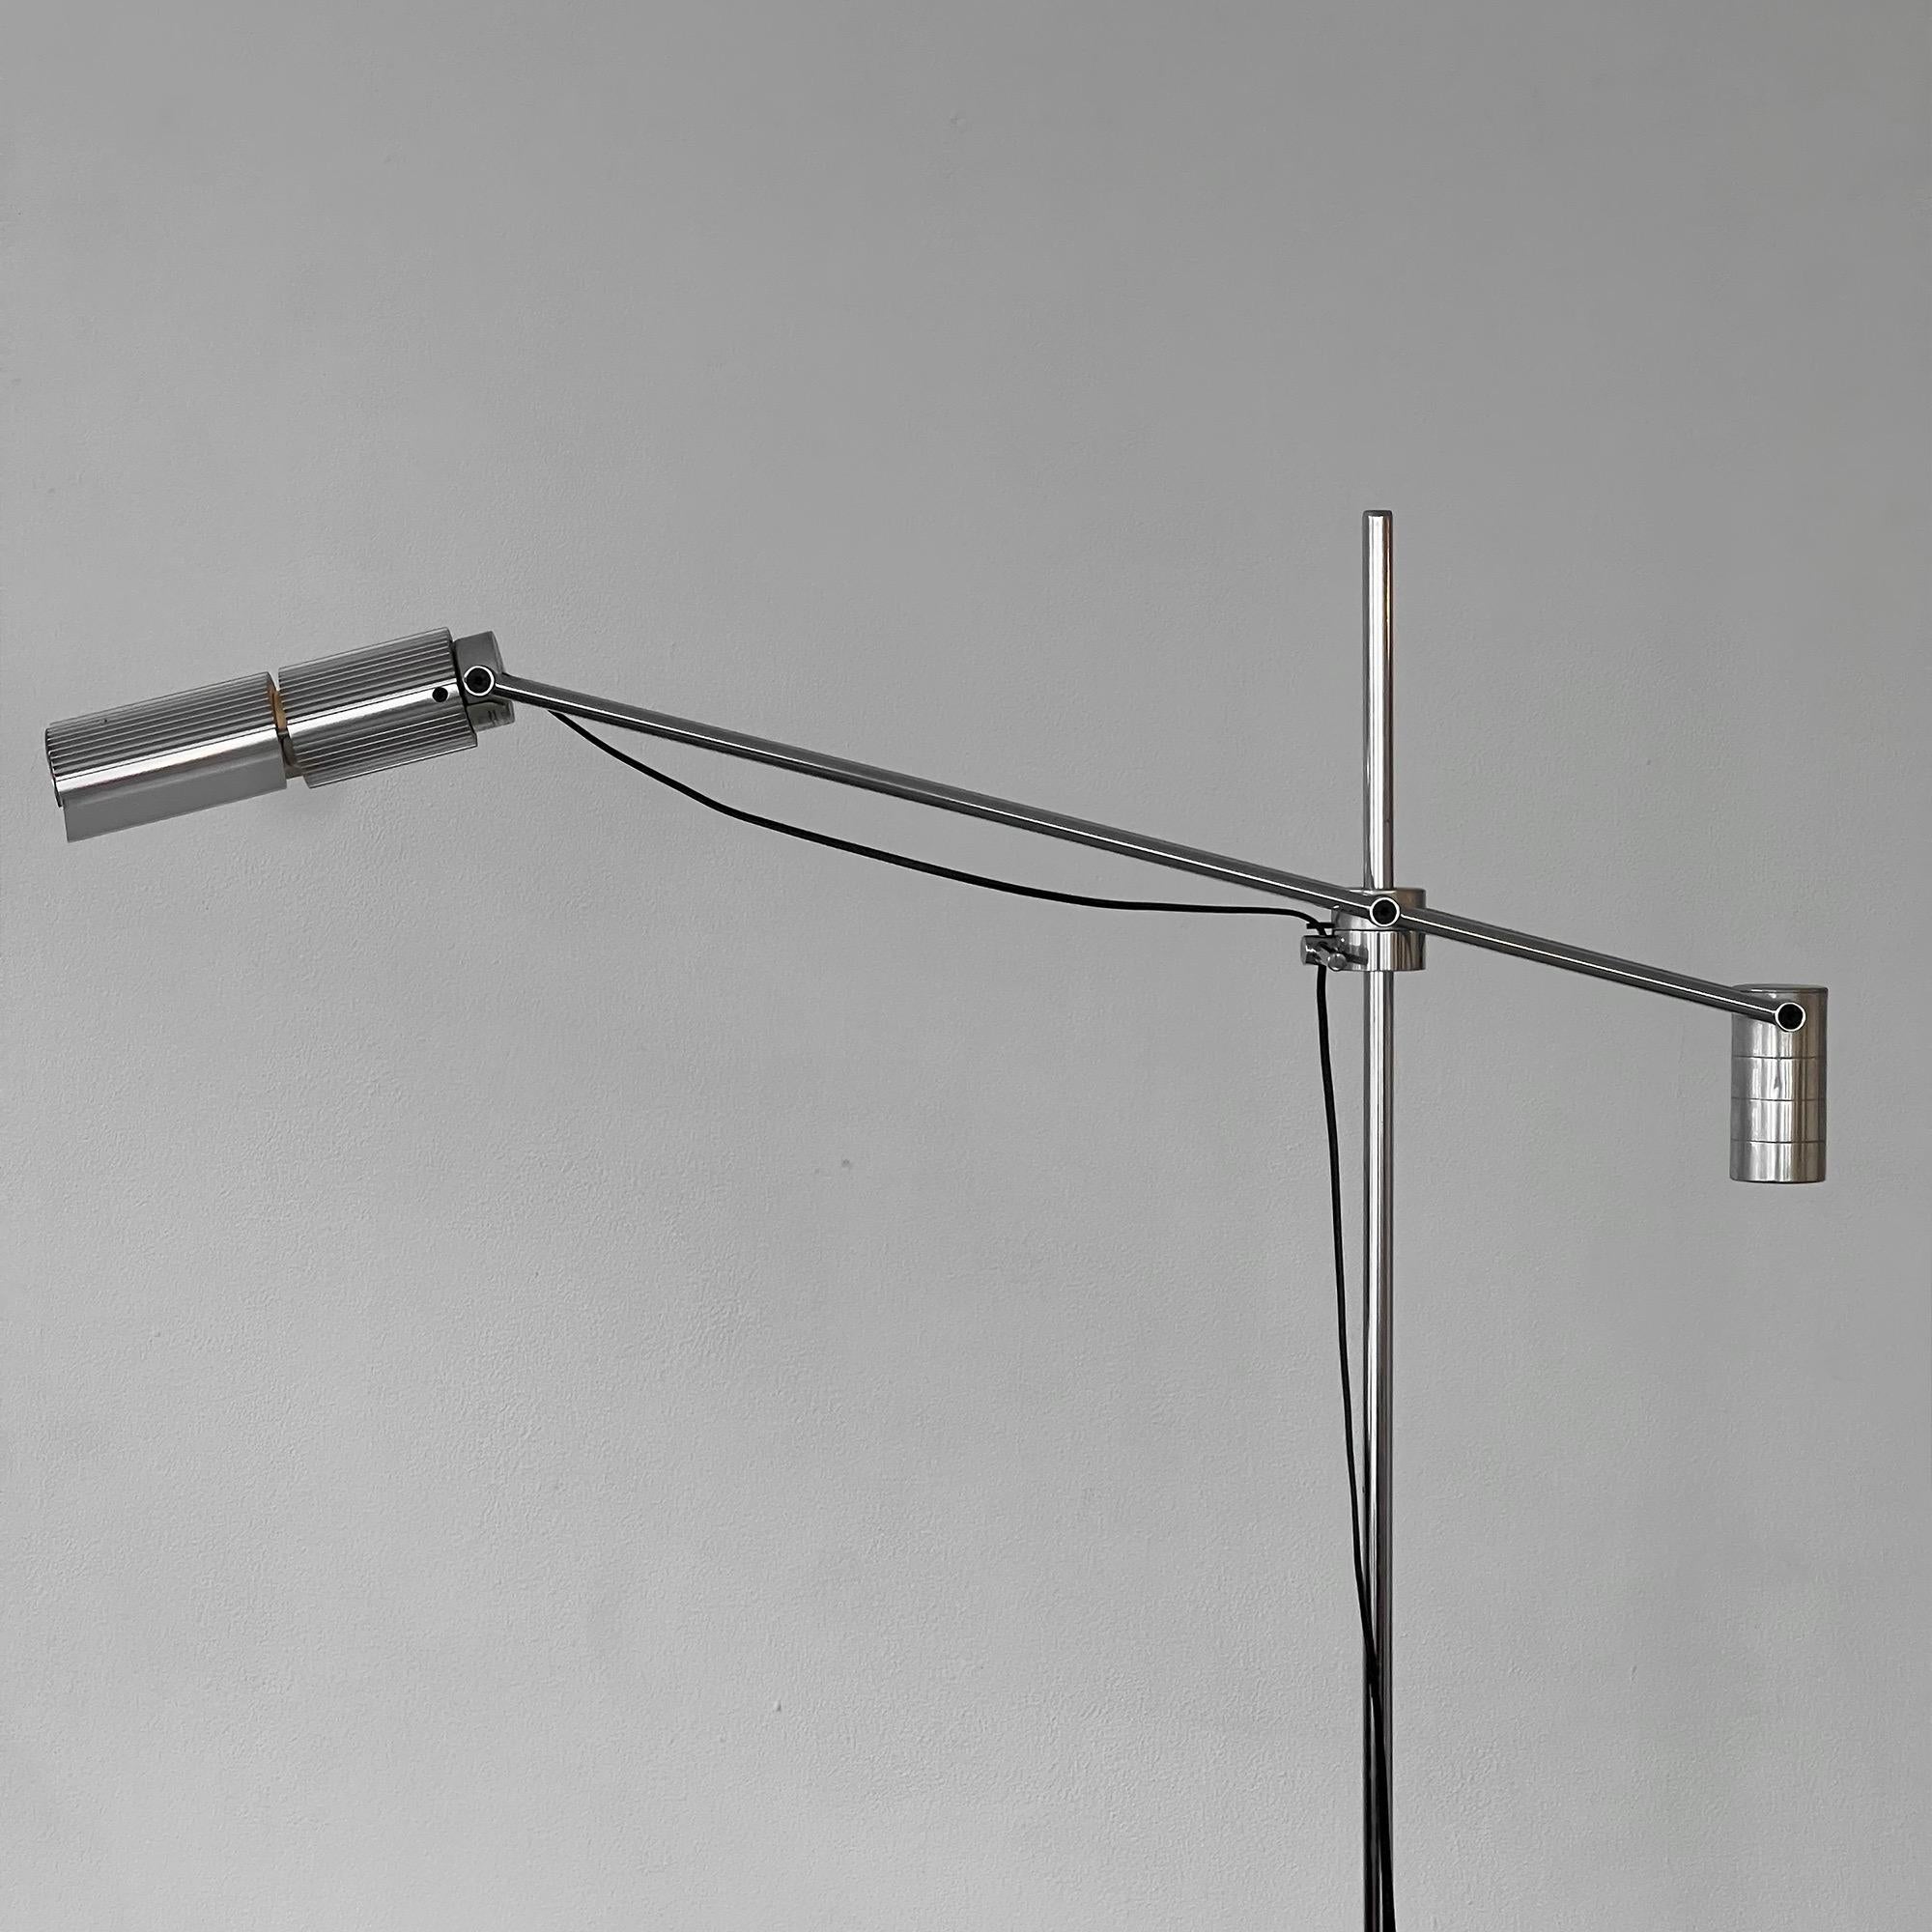 Diese Stehleuchte wurde vom Architekten Viktor Frauenknecht für Swiss Lamps International entworfen. Das 1967 gegründete Unternehmen ist auf das Design und die Herstellung von hochwertigen Beleuchtungskörpern spezialisiert. Die Verwendung